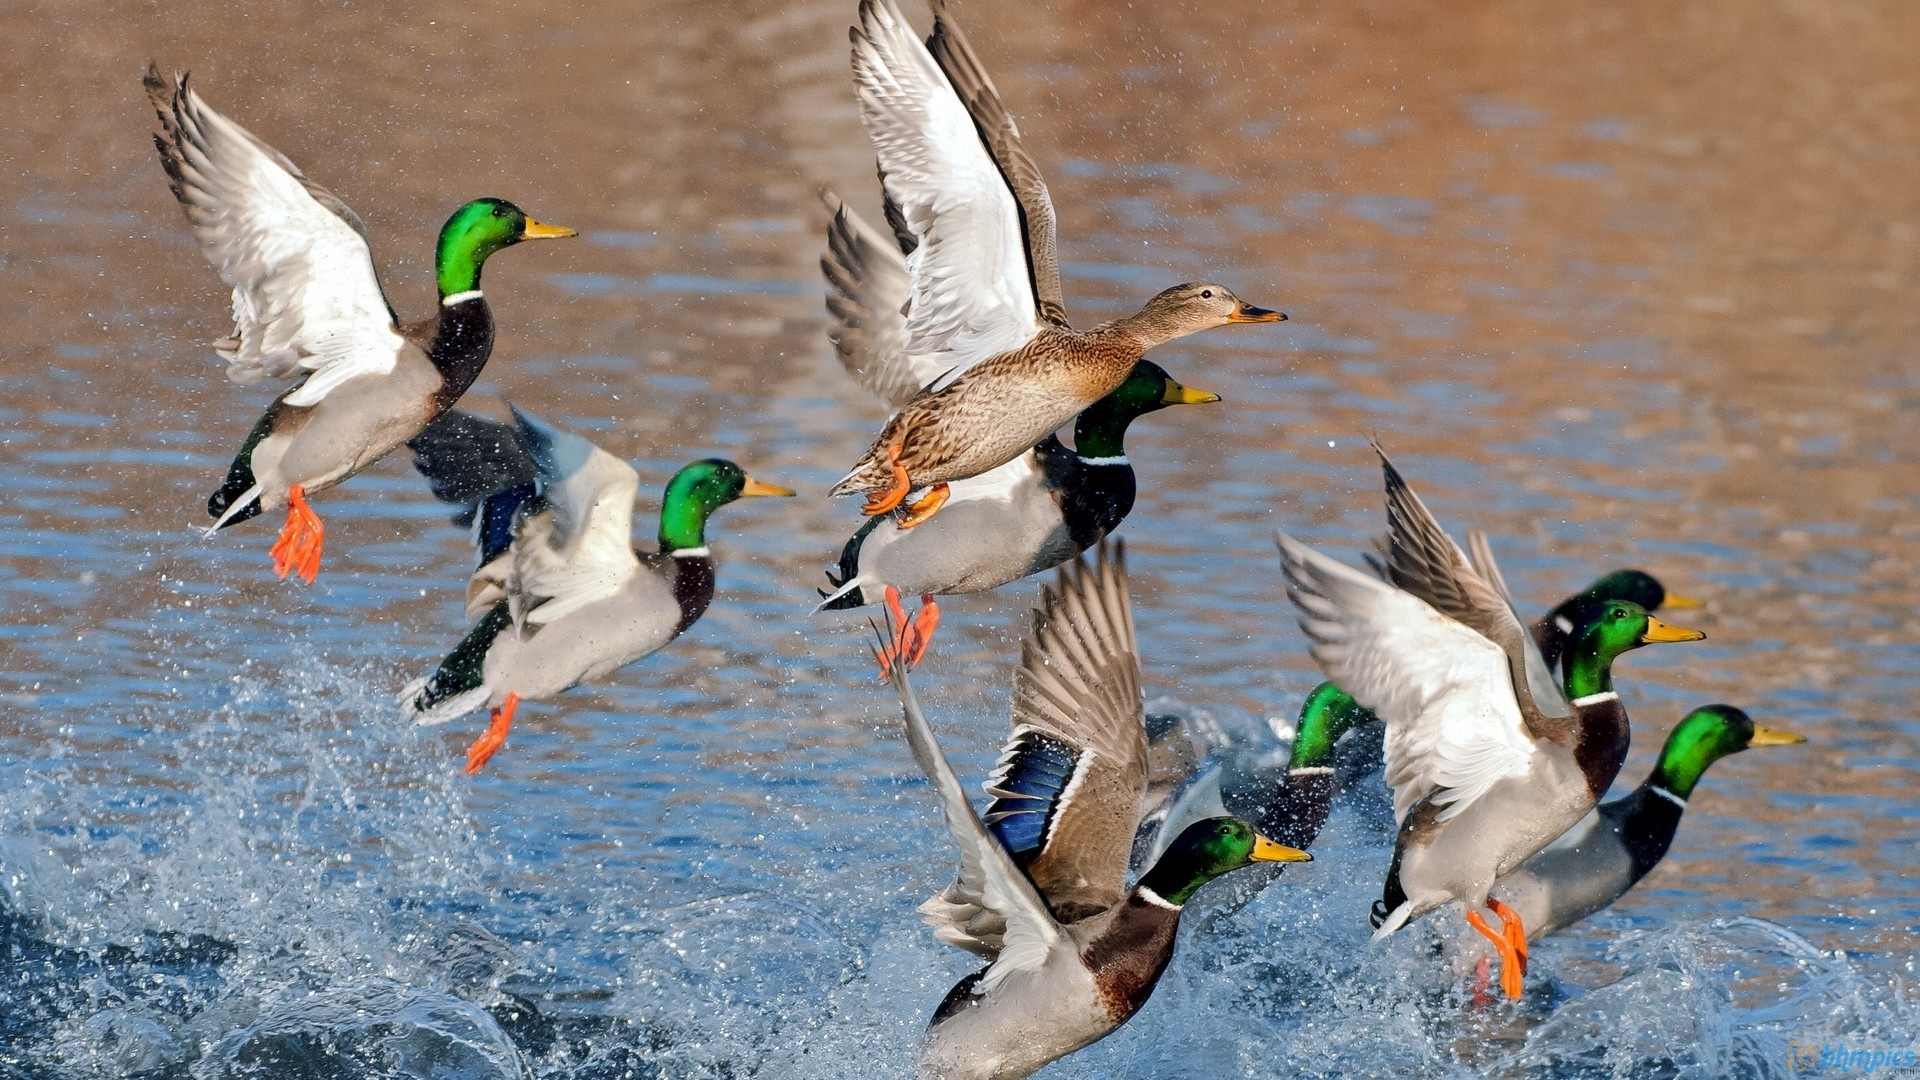 Ducks Flying Over Water Wallpaper Animals